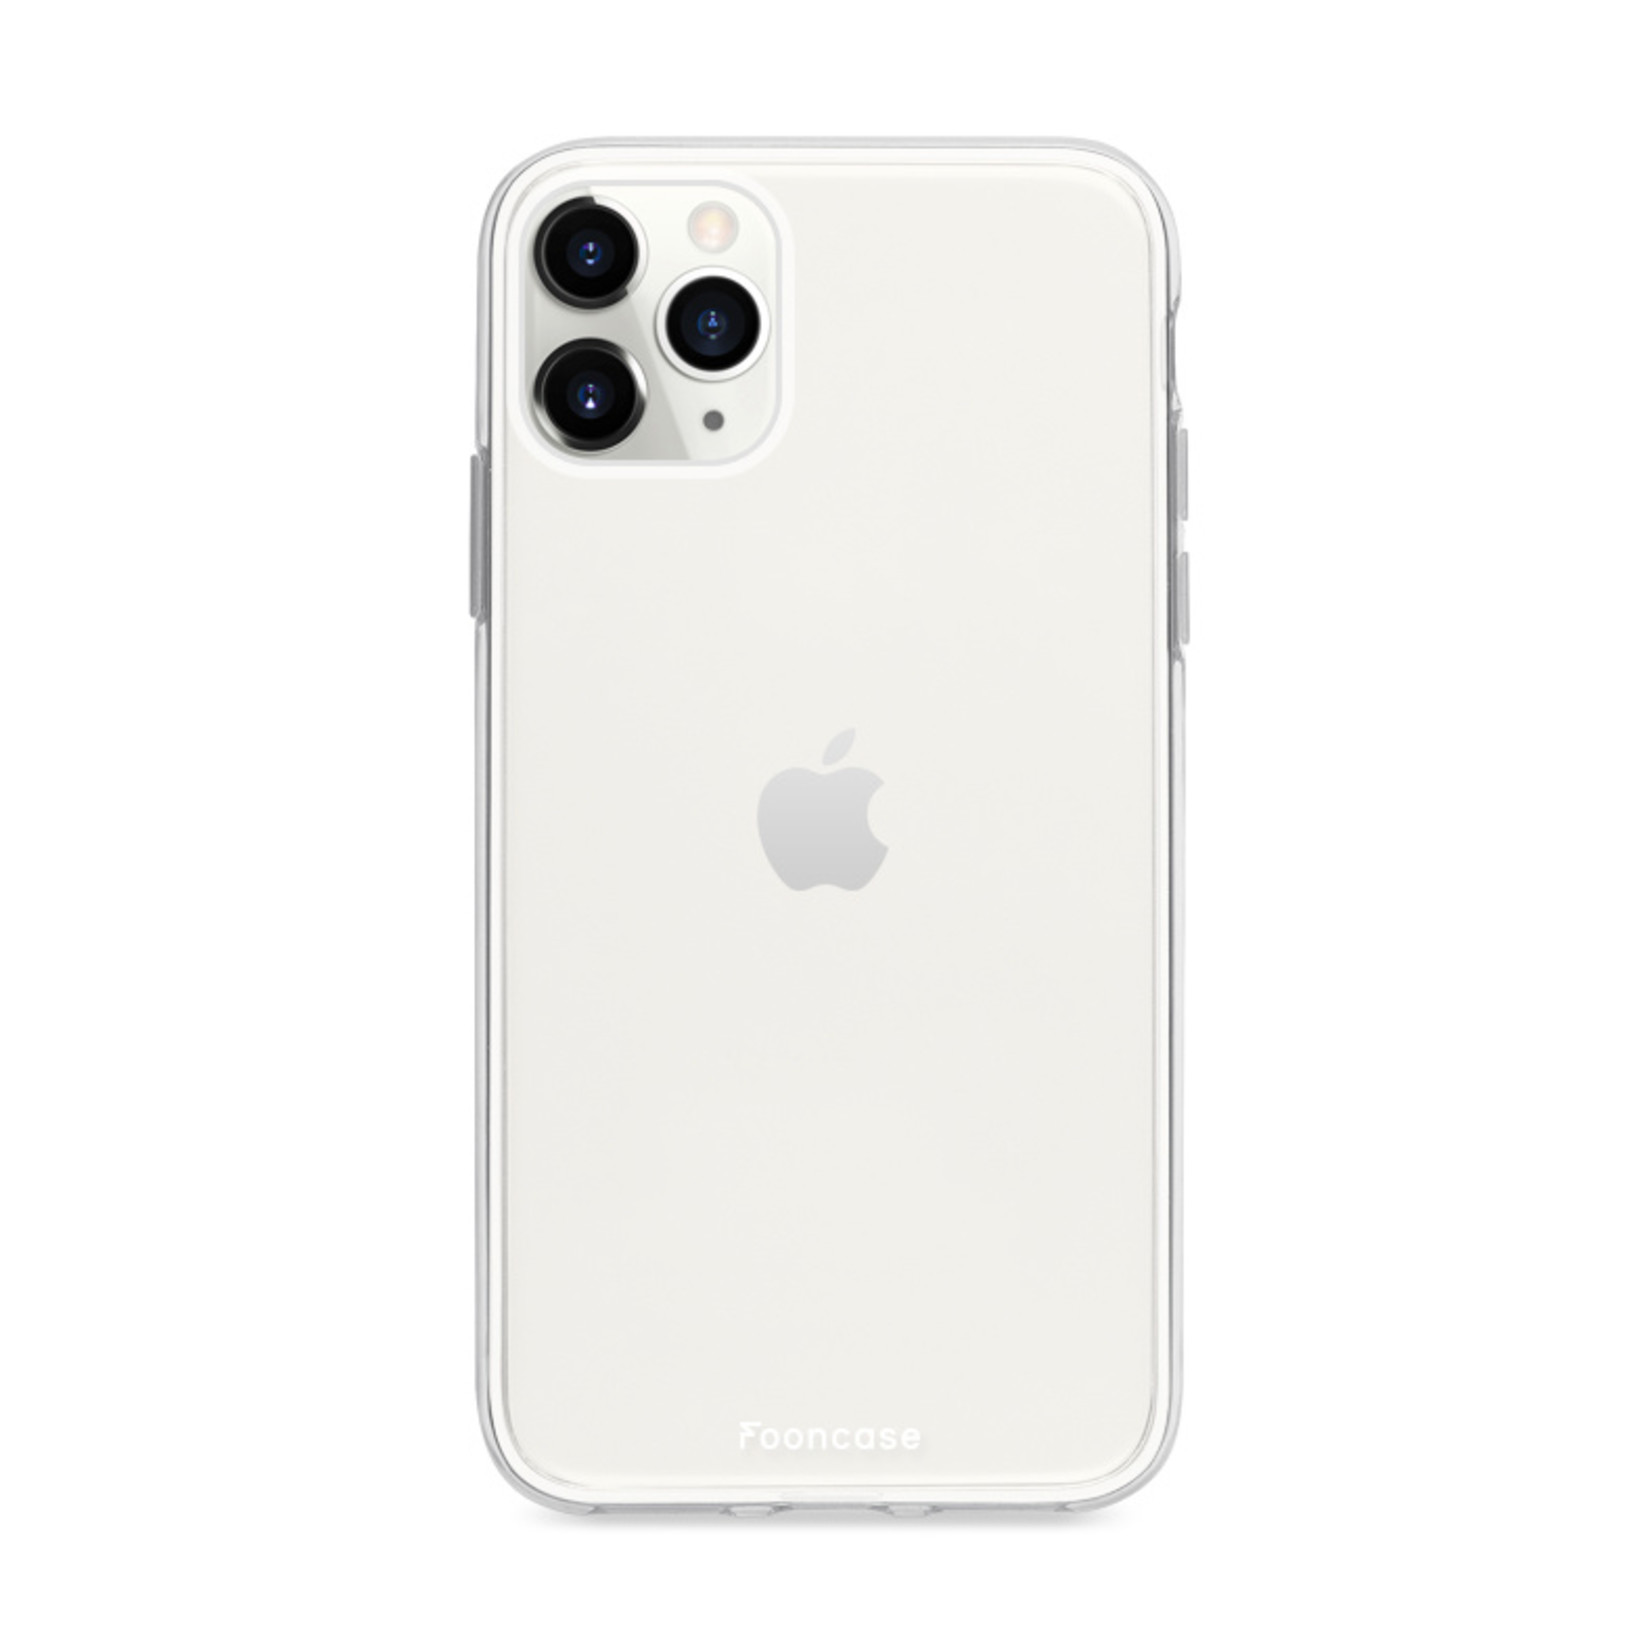 FOONCASE IPhone 11 Pro Max Case - Transparent